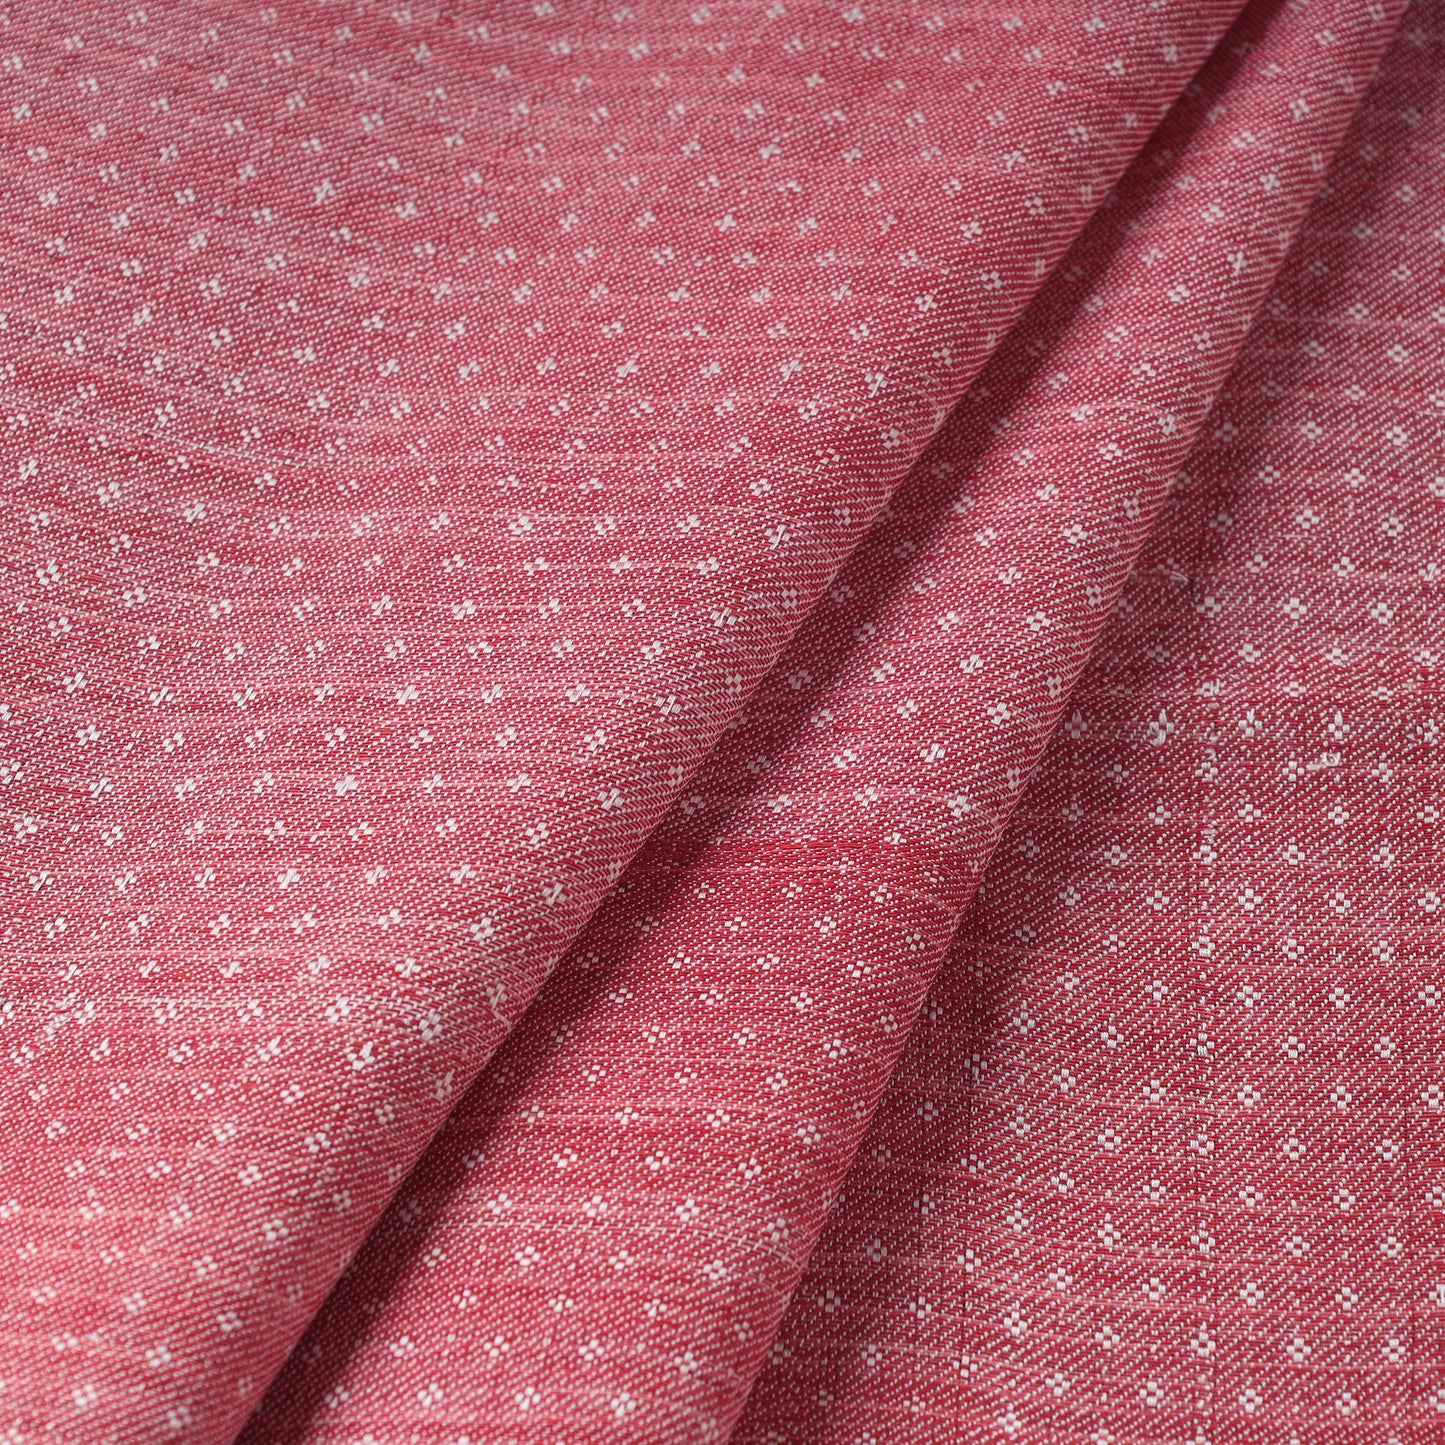 Mashru Silk Cotton Fabric